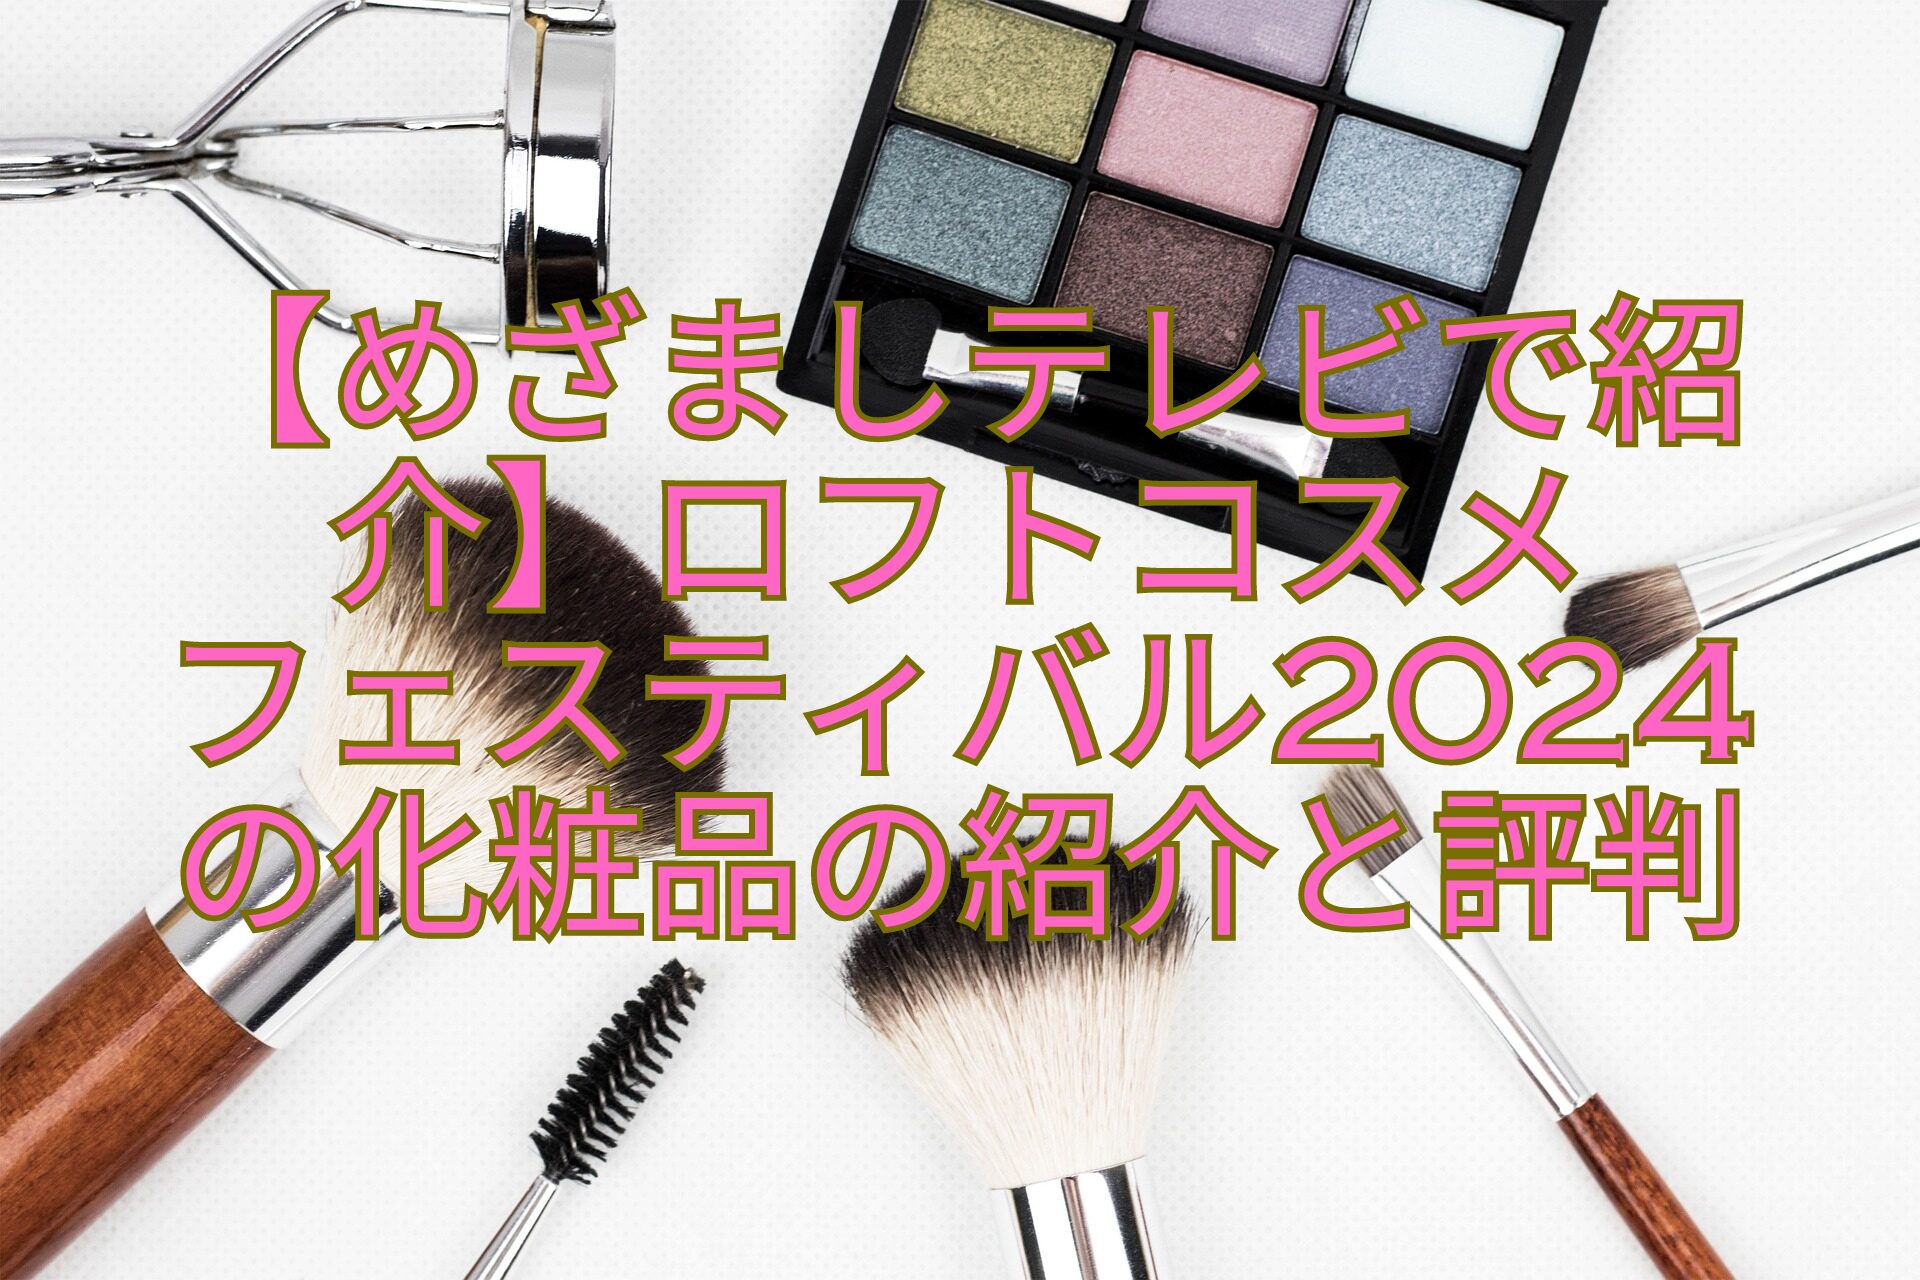 【めざましテレビで紹介】ロフトコスメ-フェスティバル2024-の化粧品の紹介と評判